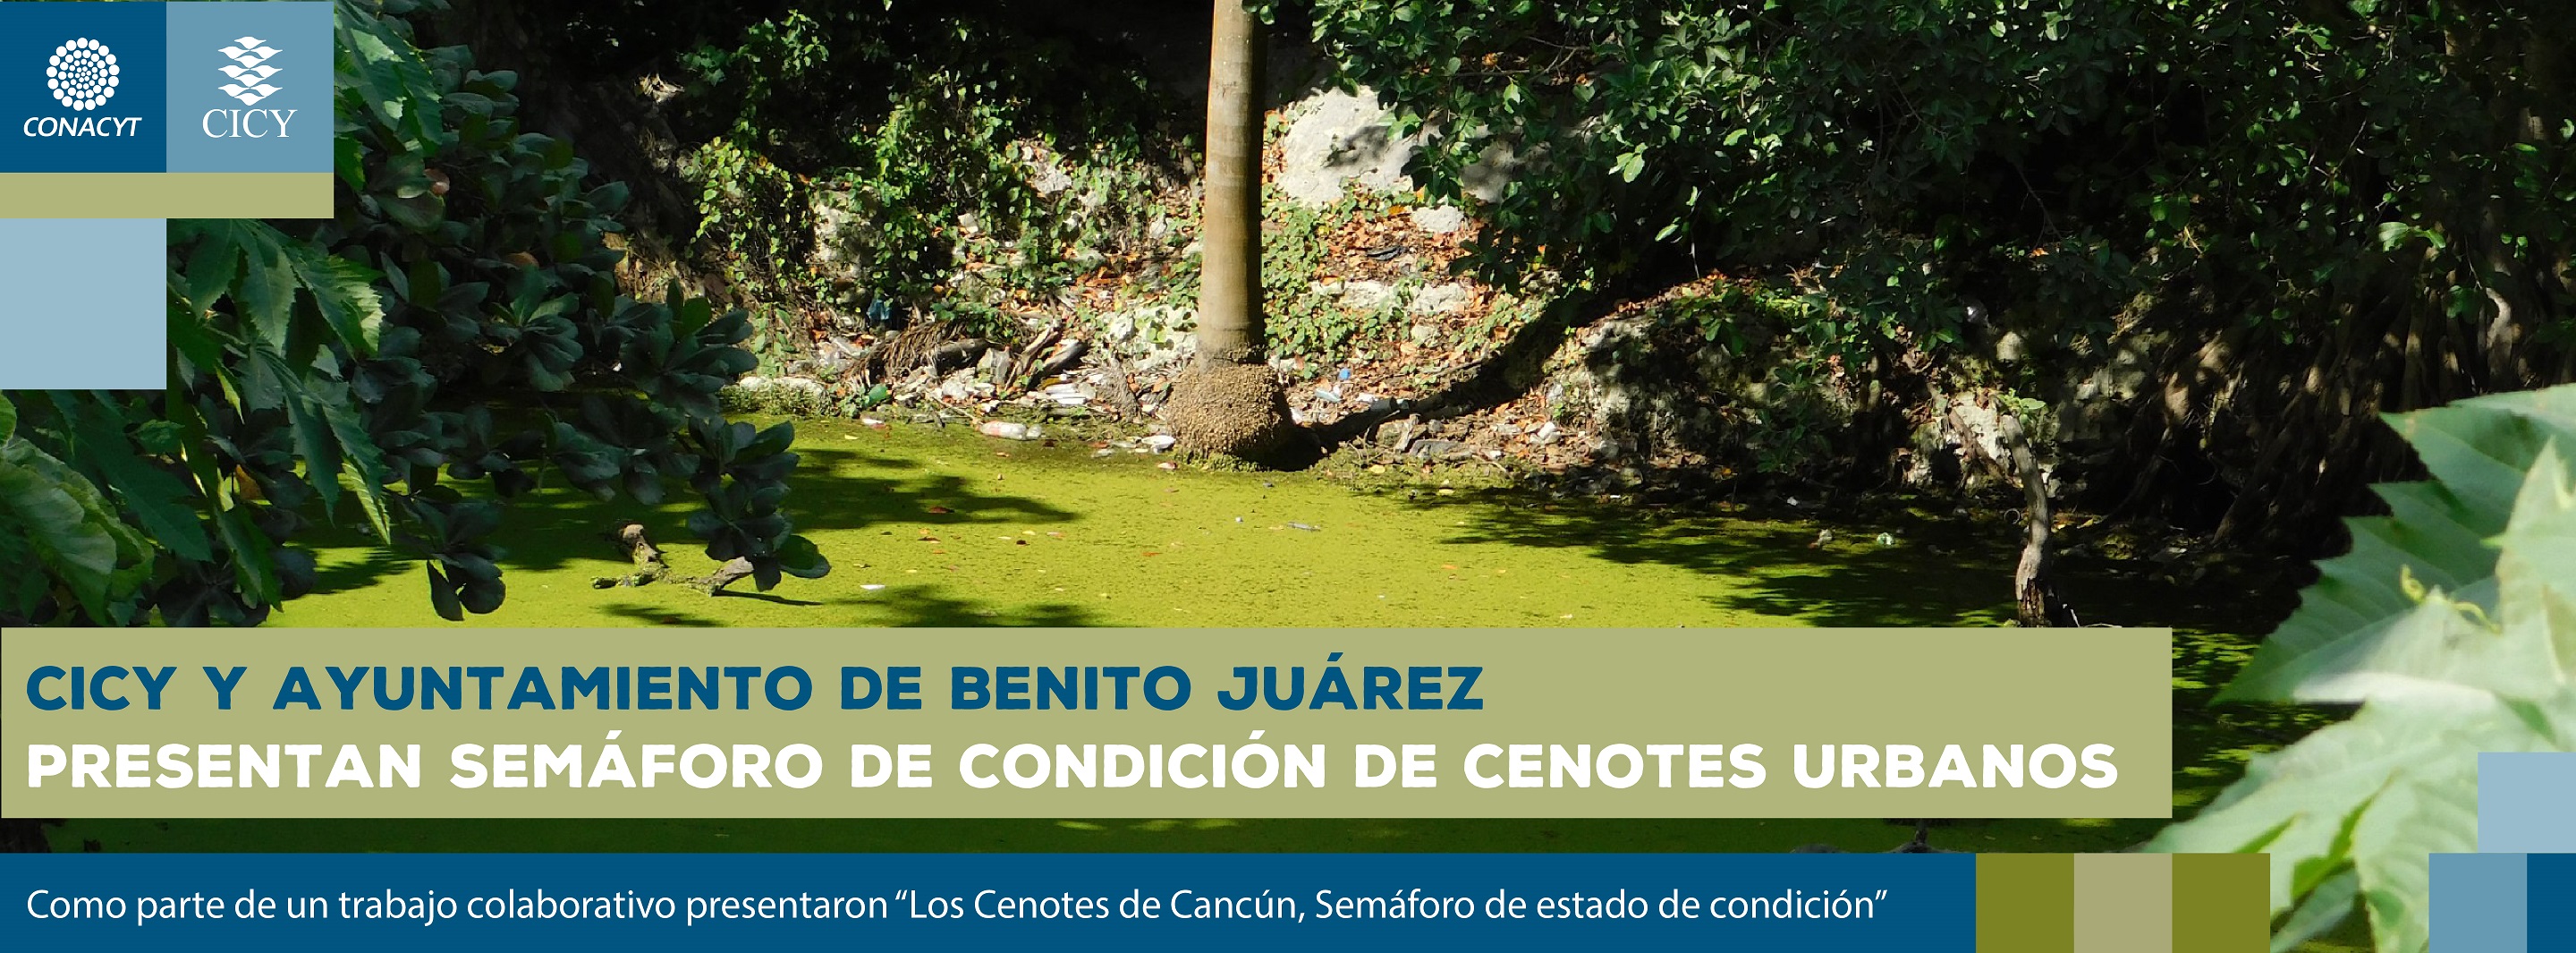 CICY y Ayuntamiento de Benito Juárez presentan Semáforo de condición de cenotes urbanos